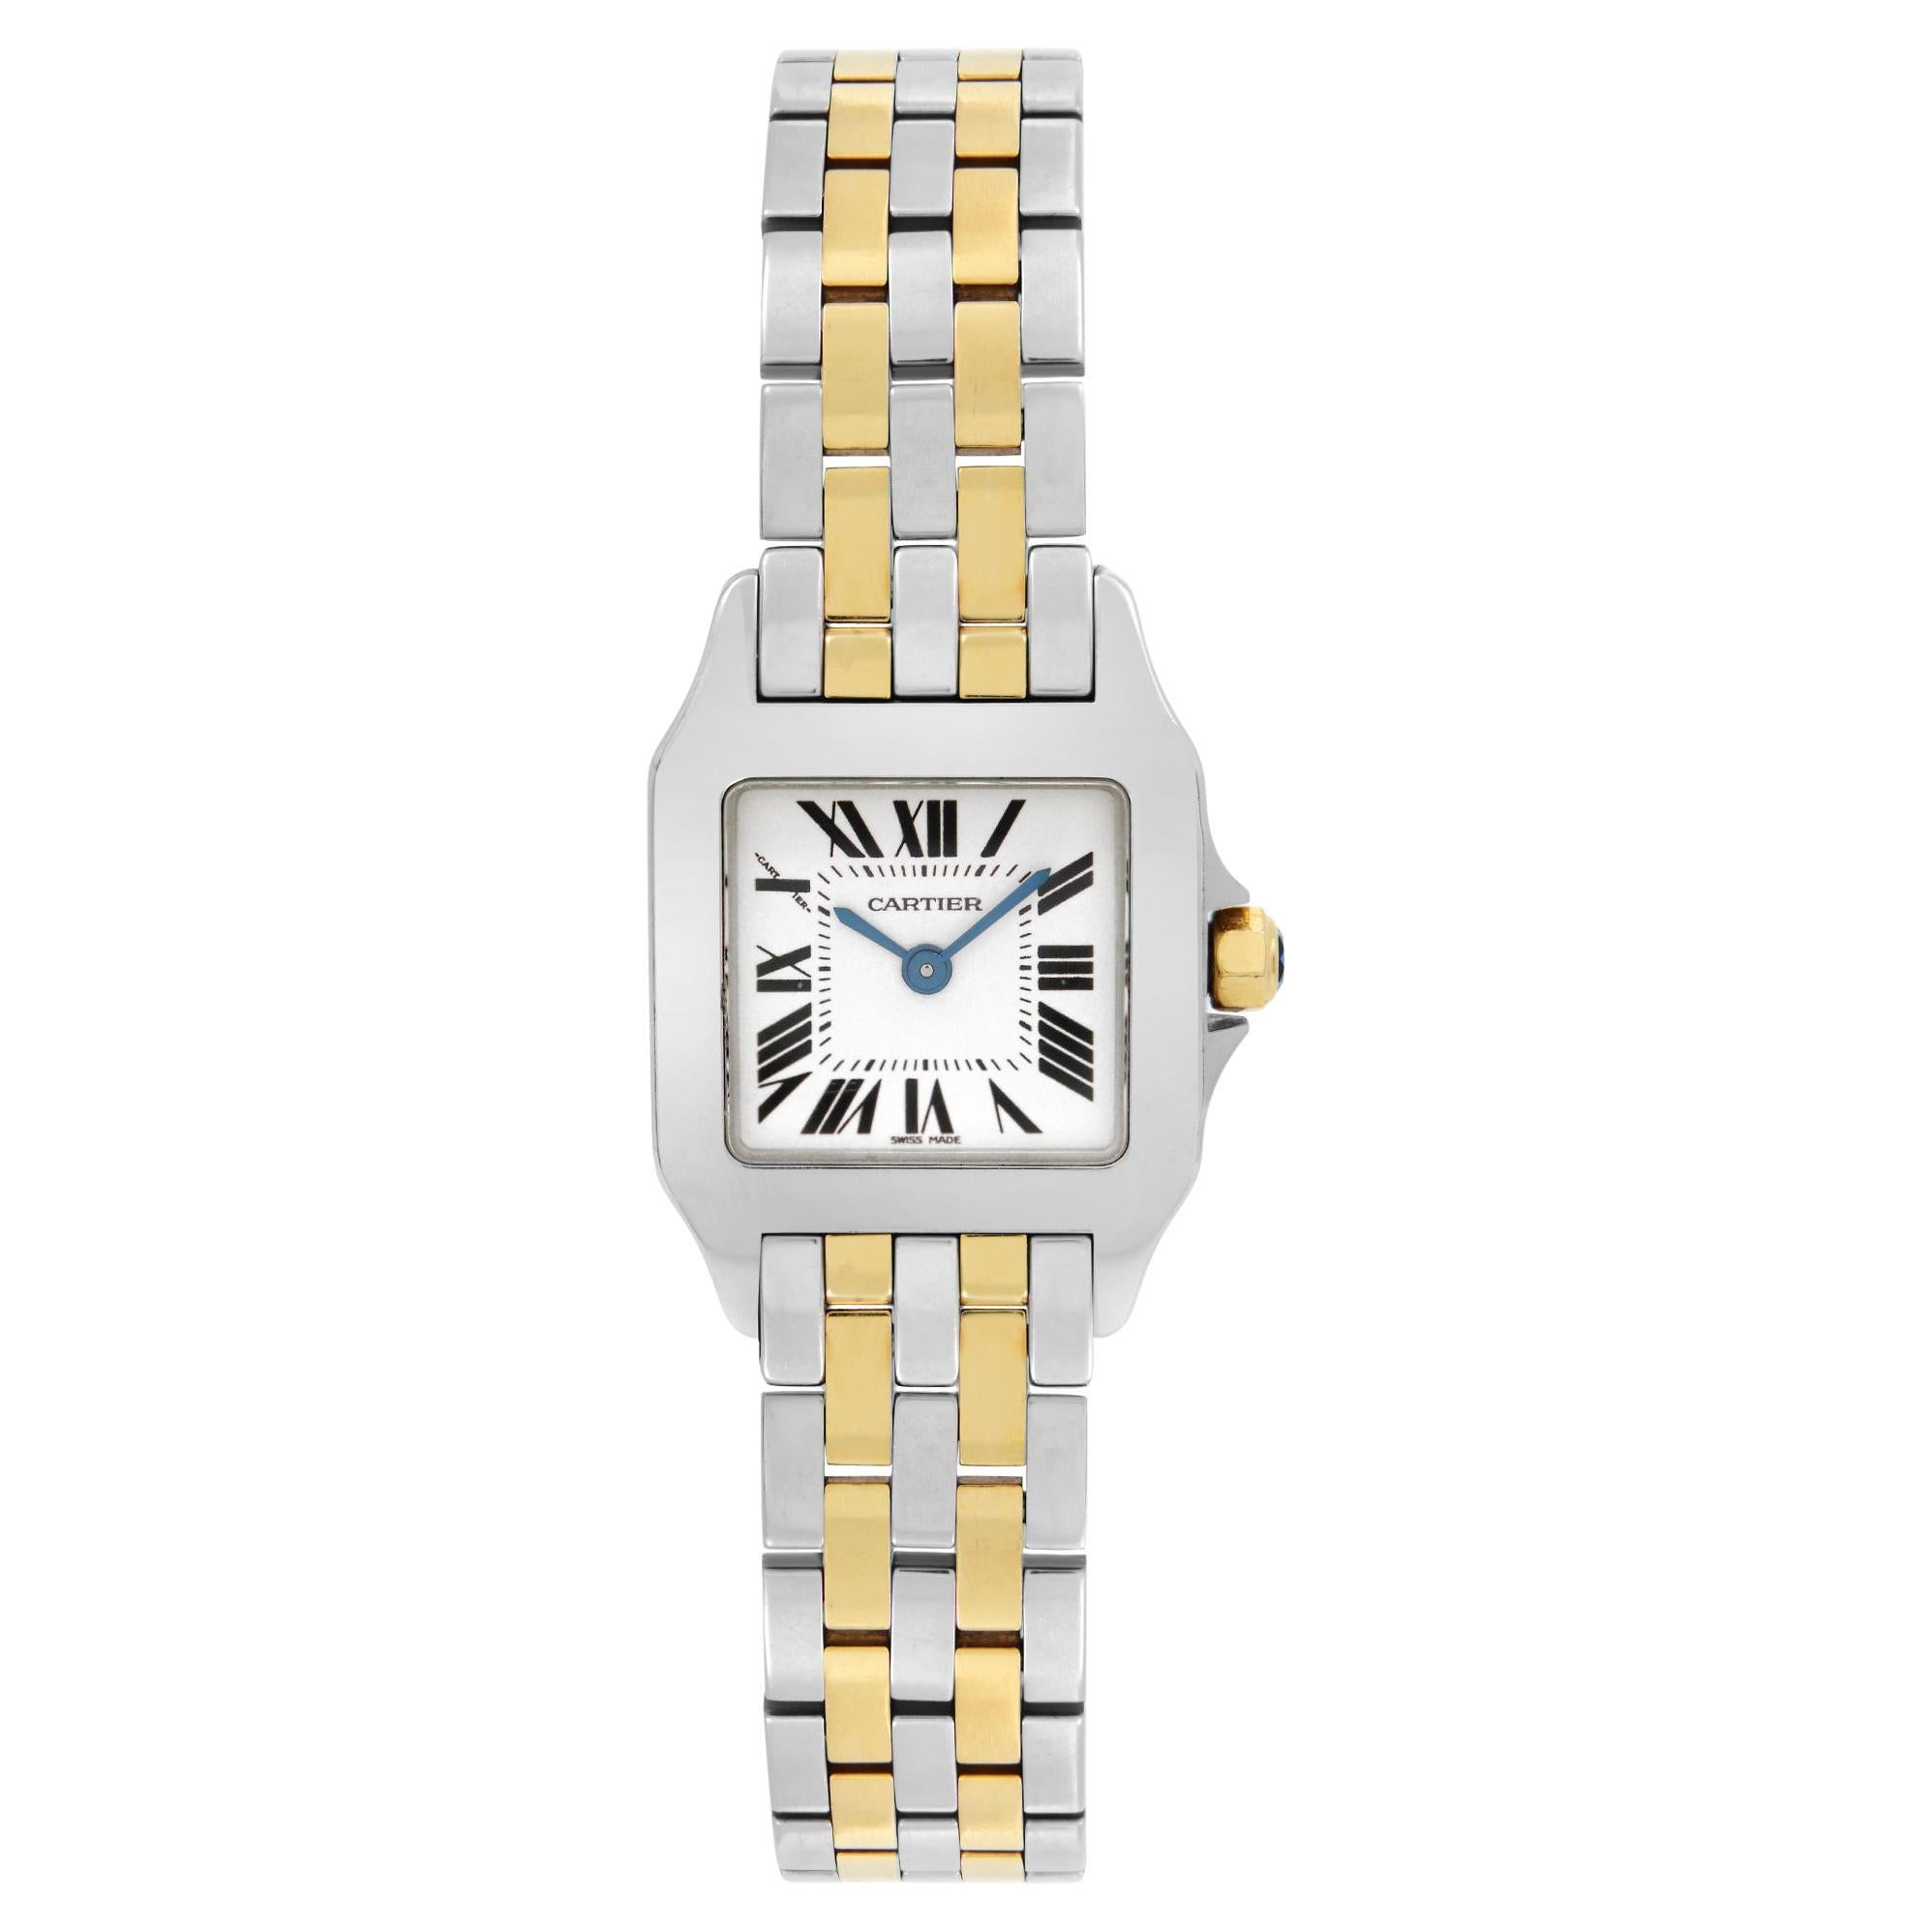 Cartier Santos Demoiselle 18k Gold Steel White Dial Quartz Ladies Watch W25066Z6